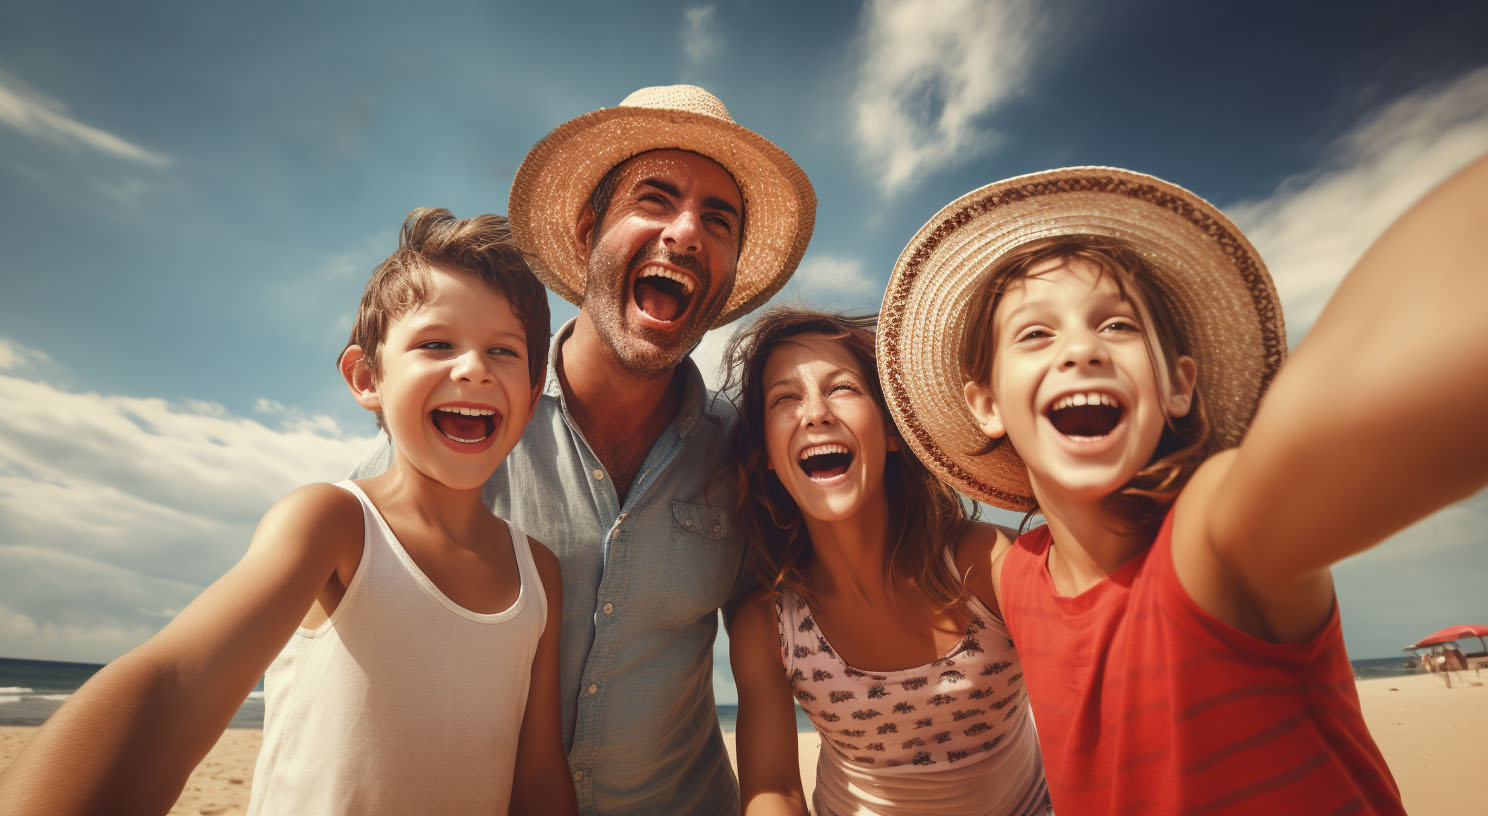 Für den perfekten Familienurlaub - Tipps & Tricks rund um kinderfreundliche Ziele, spannende Aktivitäten und die ideale Unterkunft